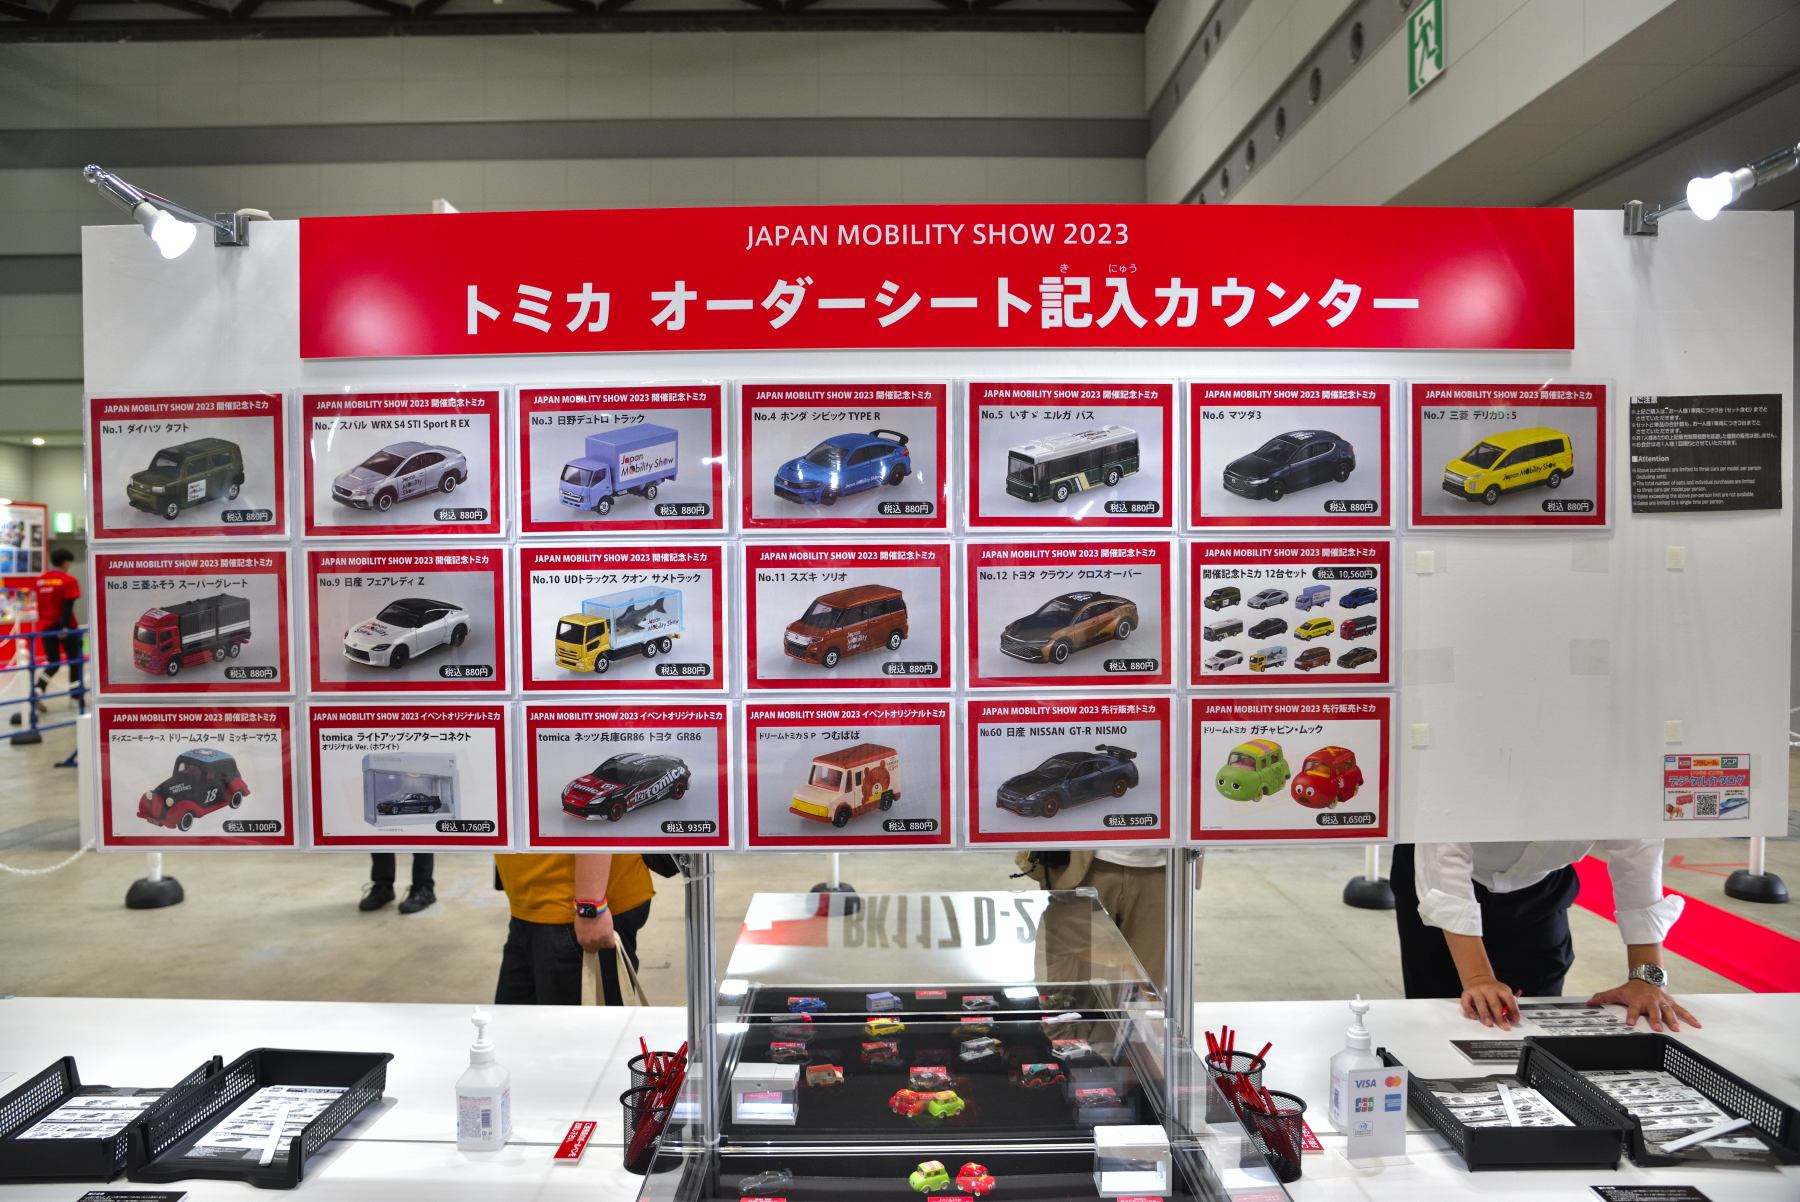 ジャパンモビリティショー 2023 開催記念トミカ12台セット JAPAN